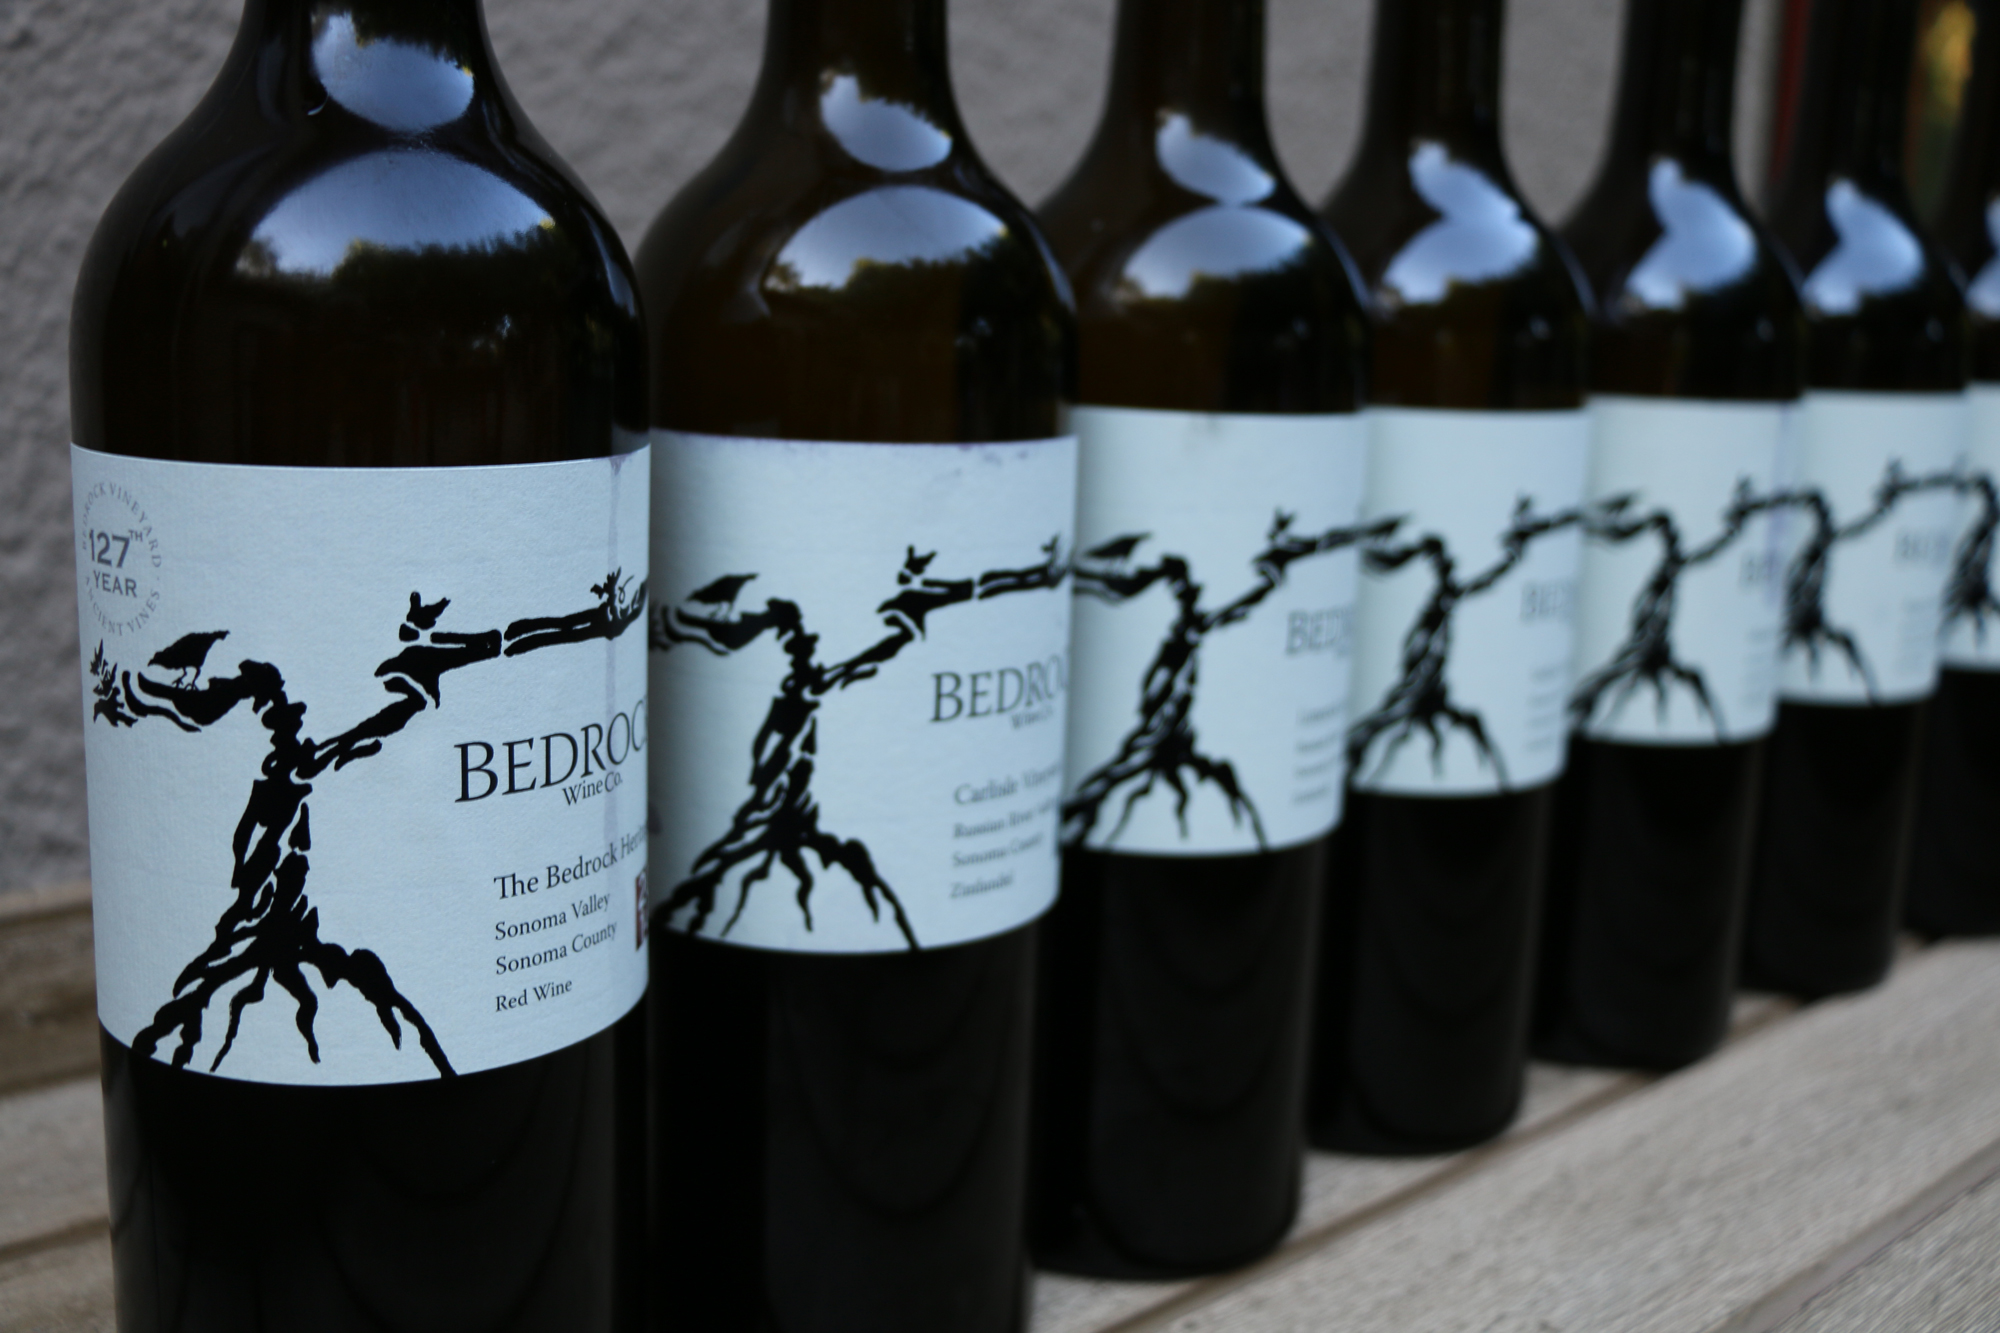 Bedrock wines